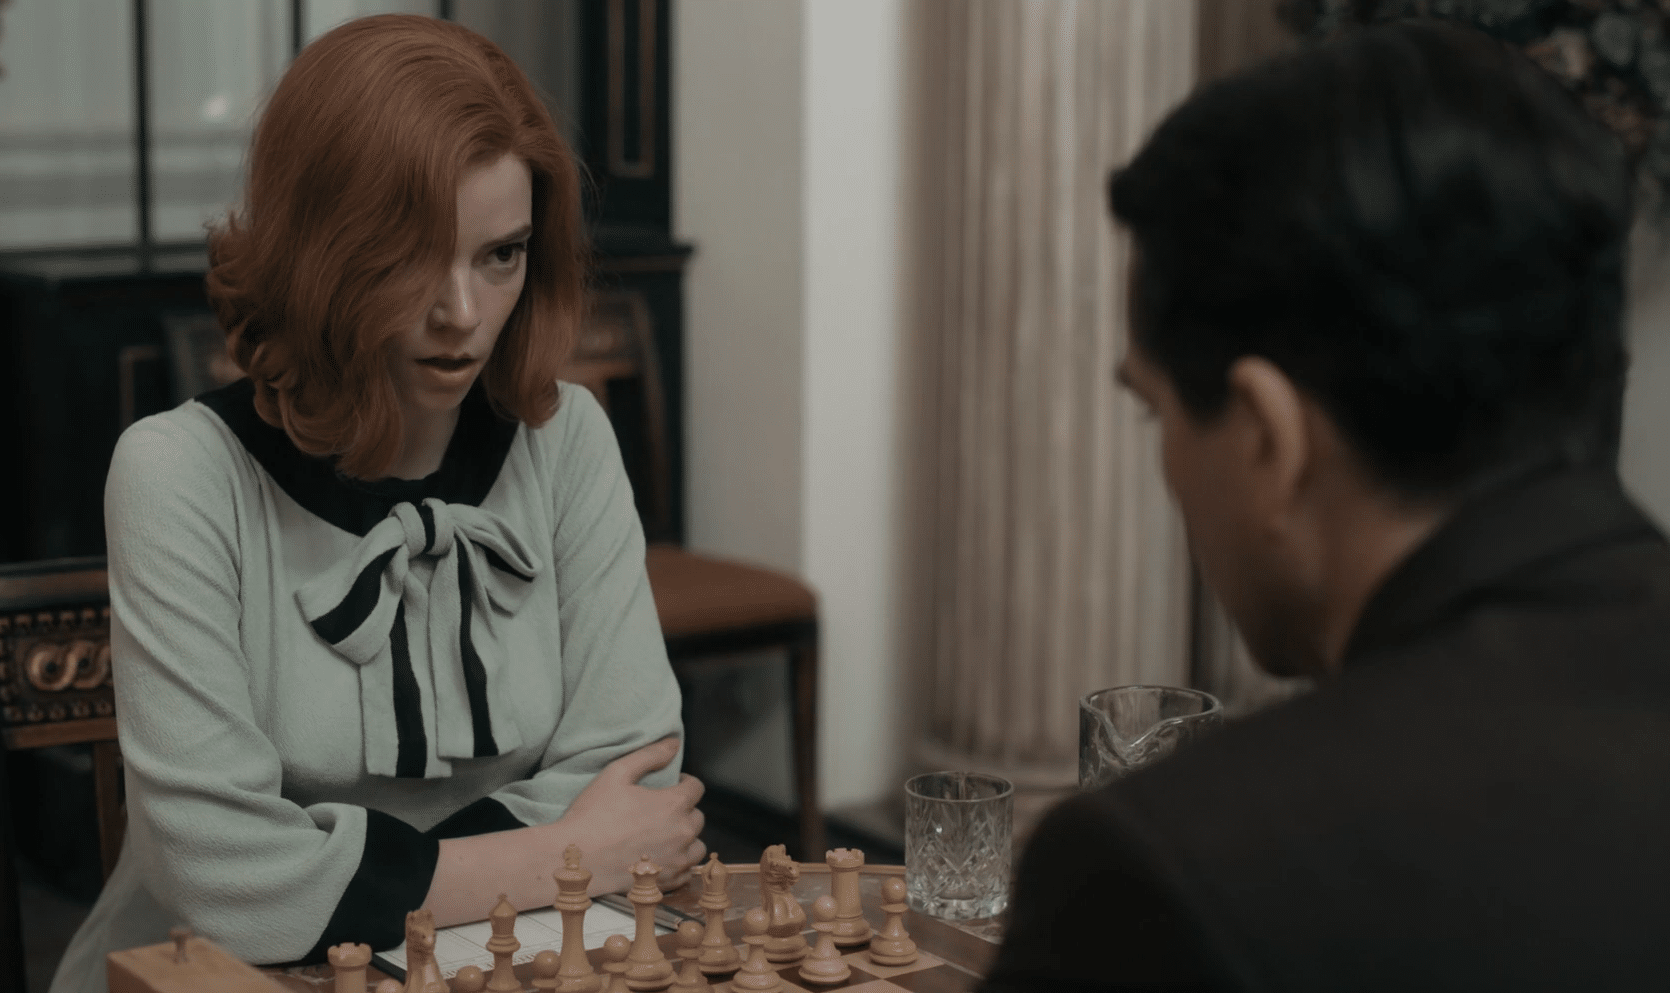 O Gambito do Rei: Beth Harmon existiu e seu nome era Bobby Fischer